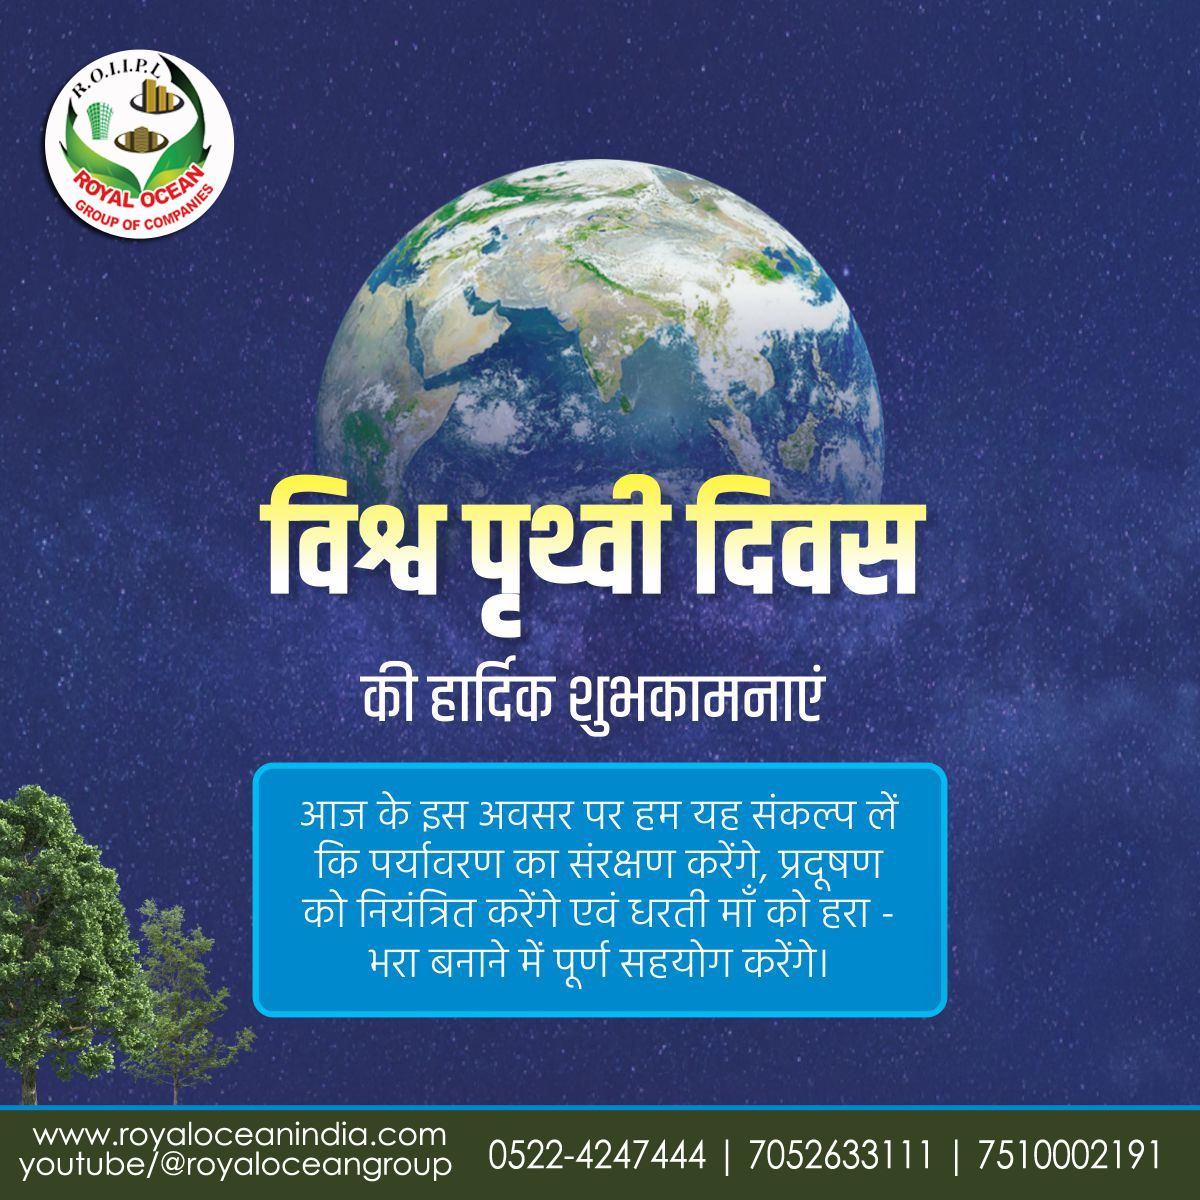 रॉयल ओसियन इंडिया इंफ्राटेक प्राइवेट लिमिटेड (ग्रुप ऑफ कम्पनीज) की तरफ से आप सभी को विश्व पृथ्वी दिवस की हार्दिक शुभकामनाएं।
#WorldEarthDay #EarthDay #environment #pollution #pollutionfree #EarthDay2024 #human